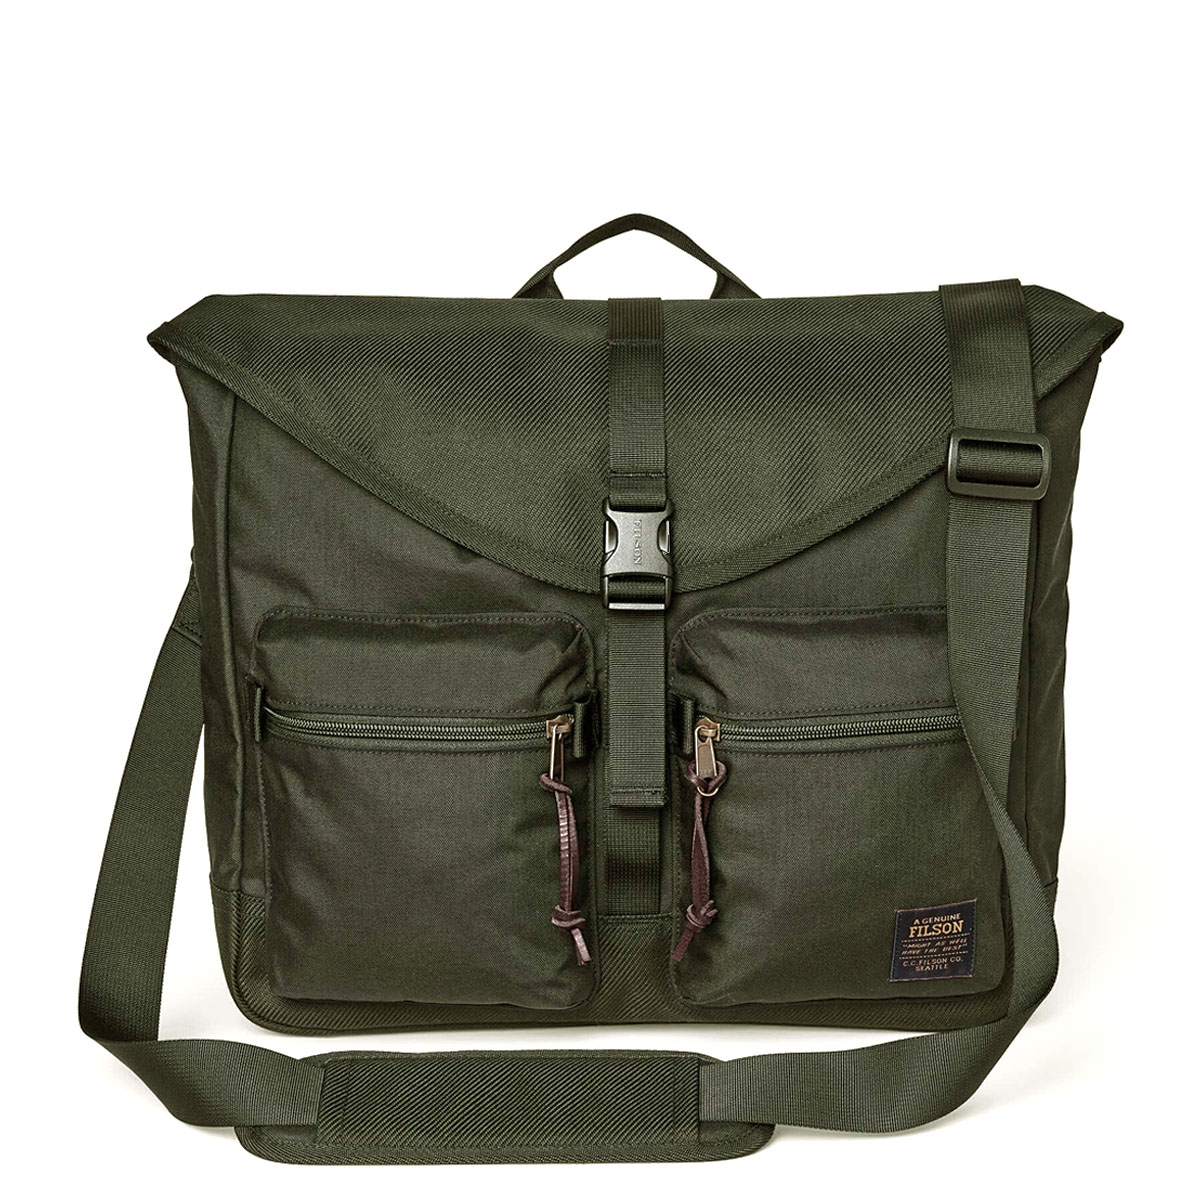 Filson Surveyor Messenger Bag Service Green, duurzame en veelzijdige messenger bag die bestand is tegen intensief gebruik